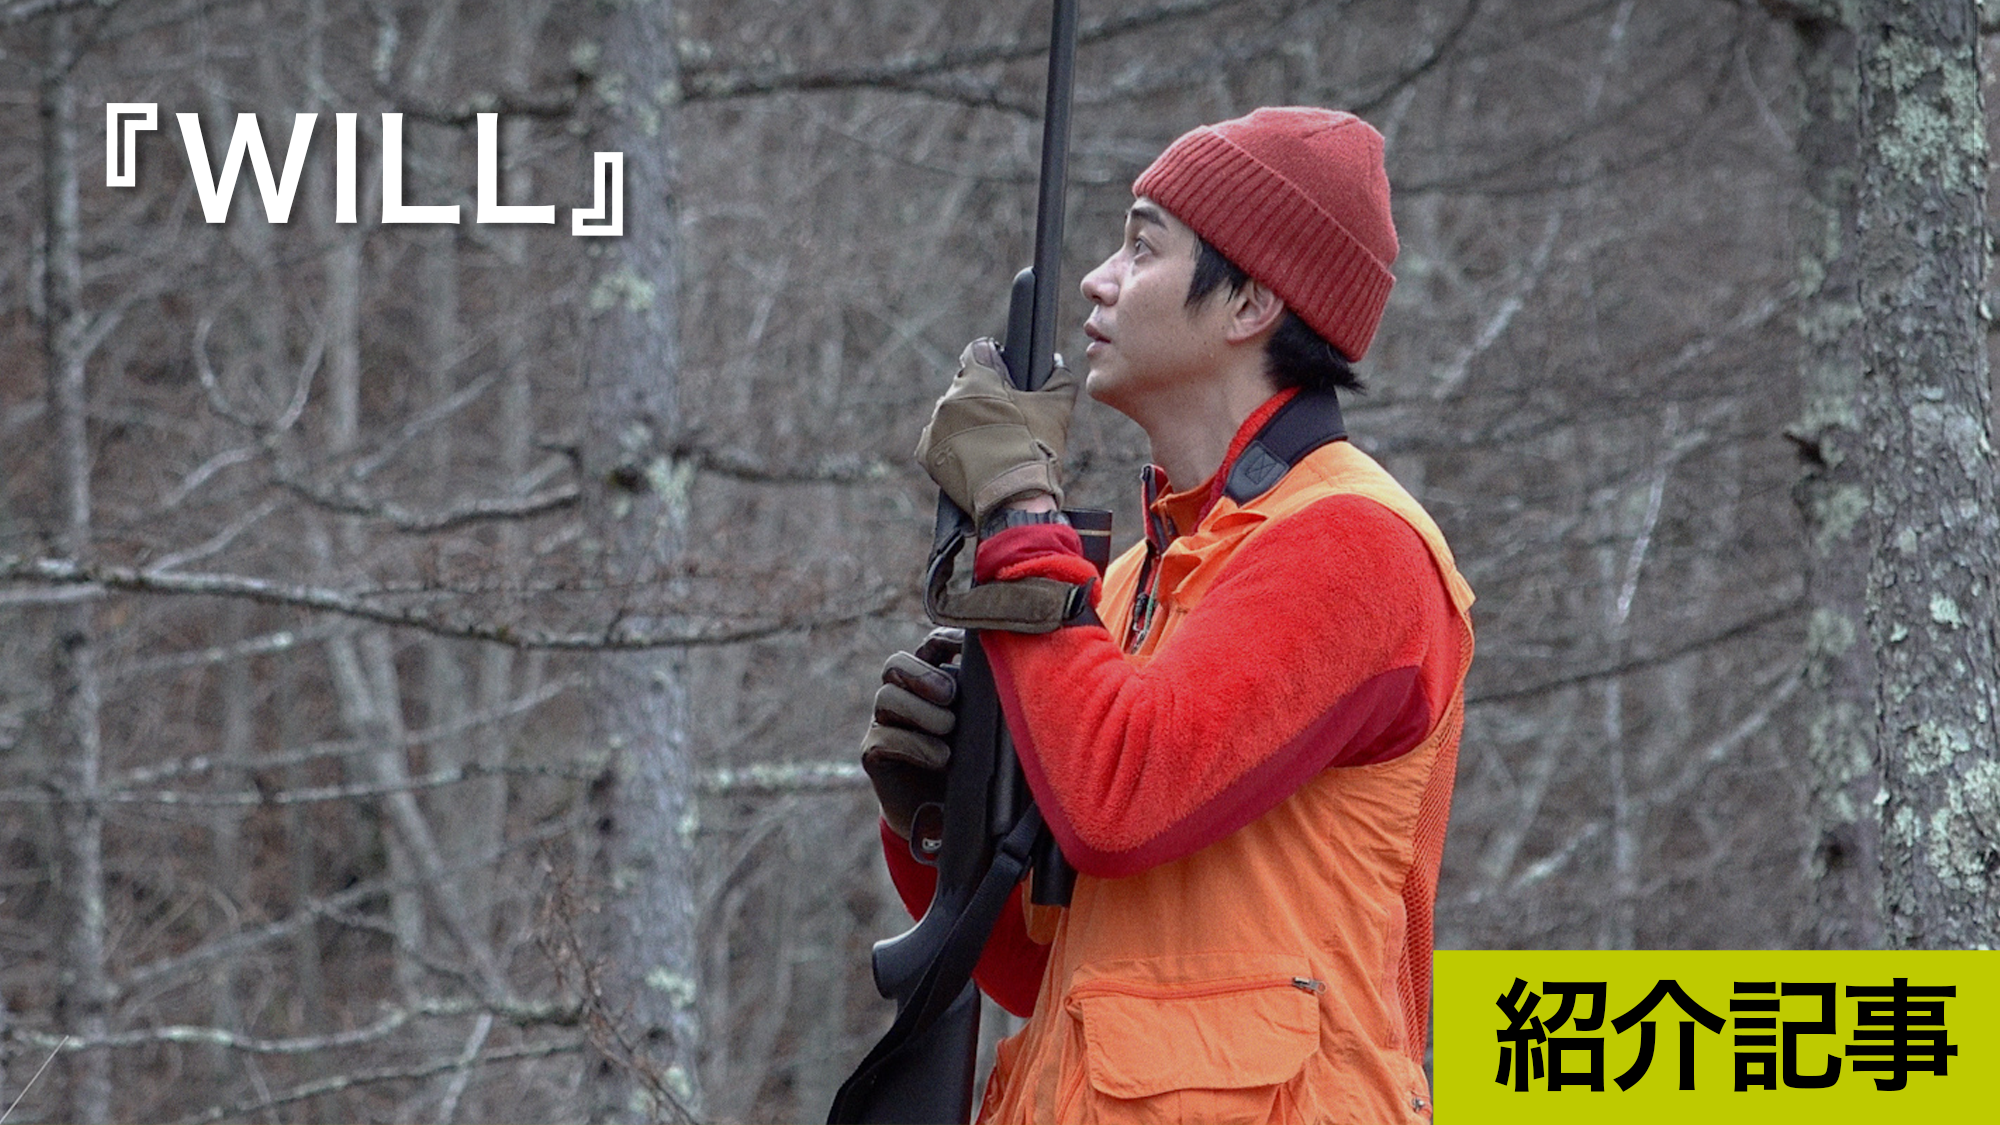 『WILL』俳優・東出昌大に密着。狩猟によっての野生の命をいただき、生きながらえる命とは何か?